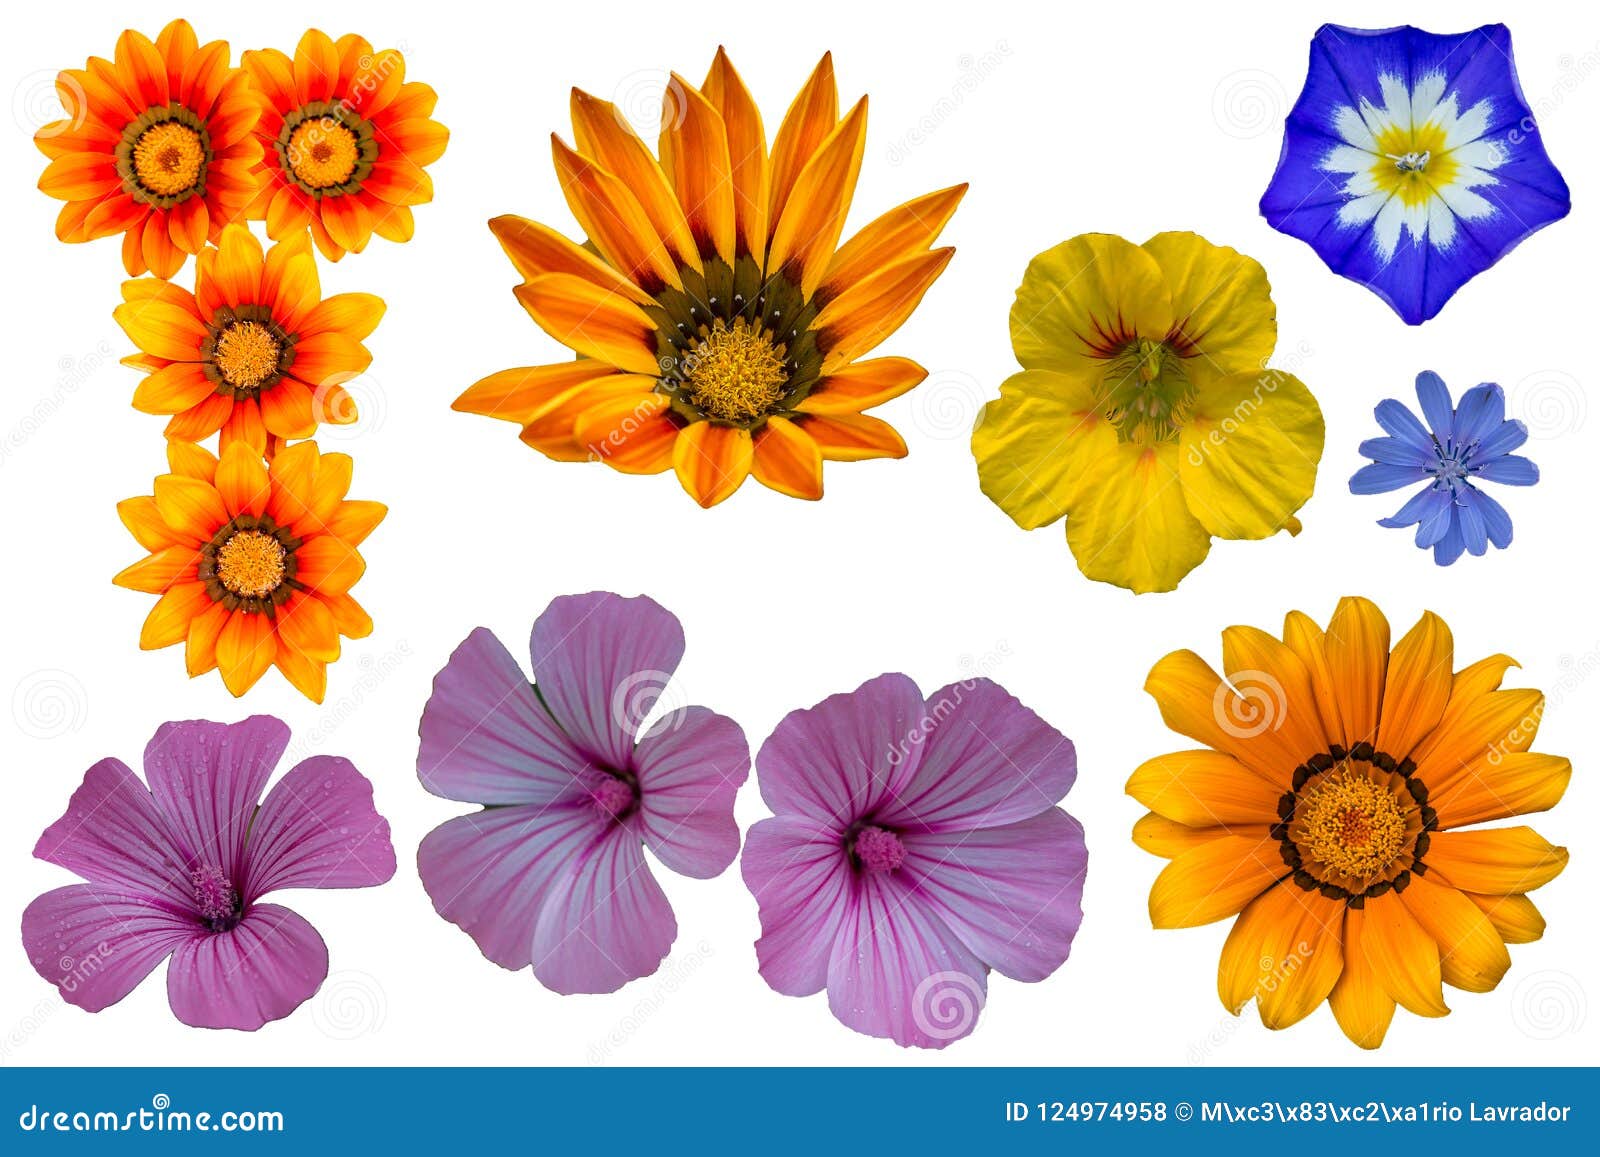 Paquete de varias flores foto de archivo. Imagen de verano - 124974958